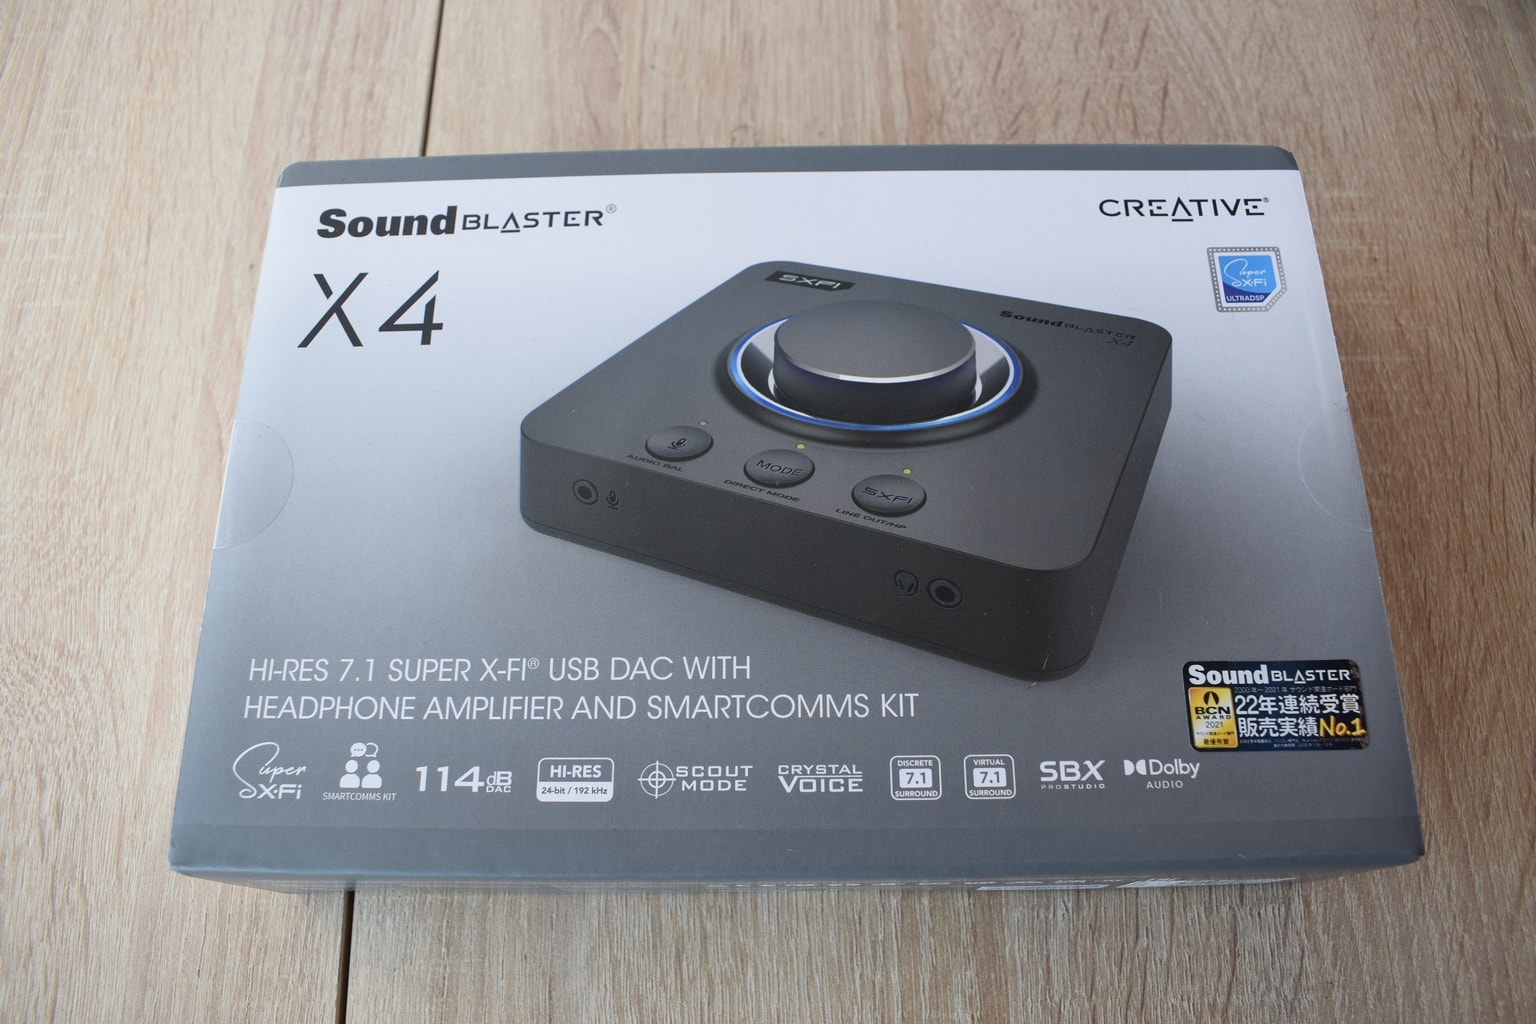 Creative lanza su Sound Blaster X4, una nueva tarjeta de sonido